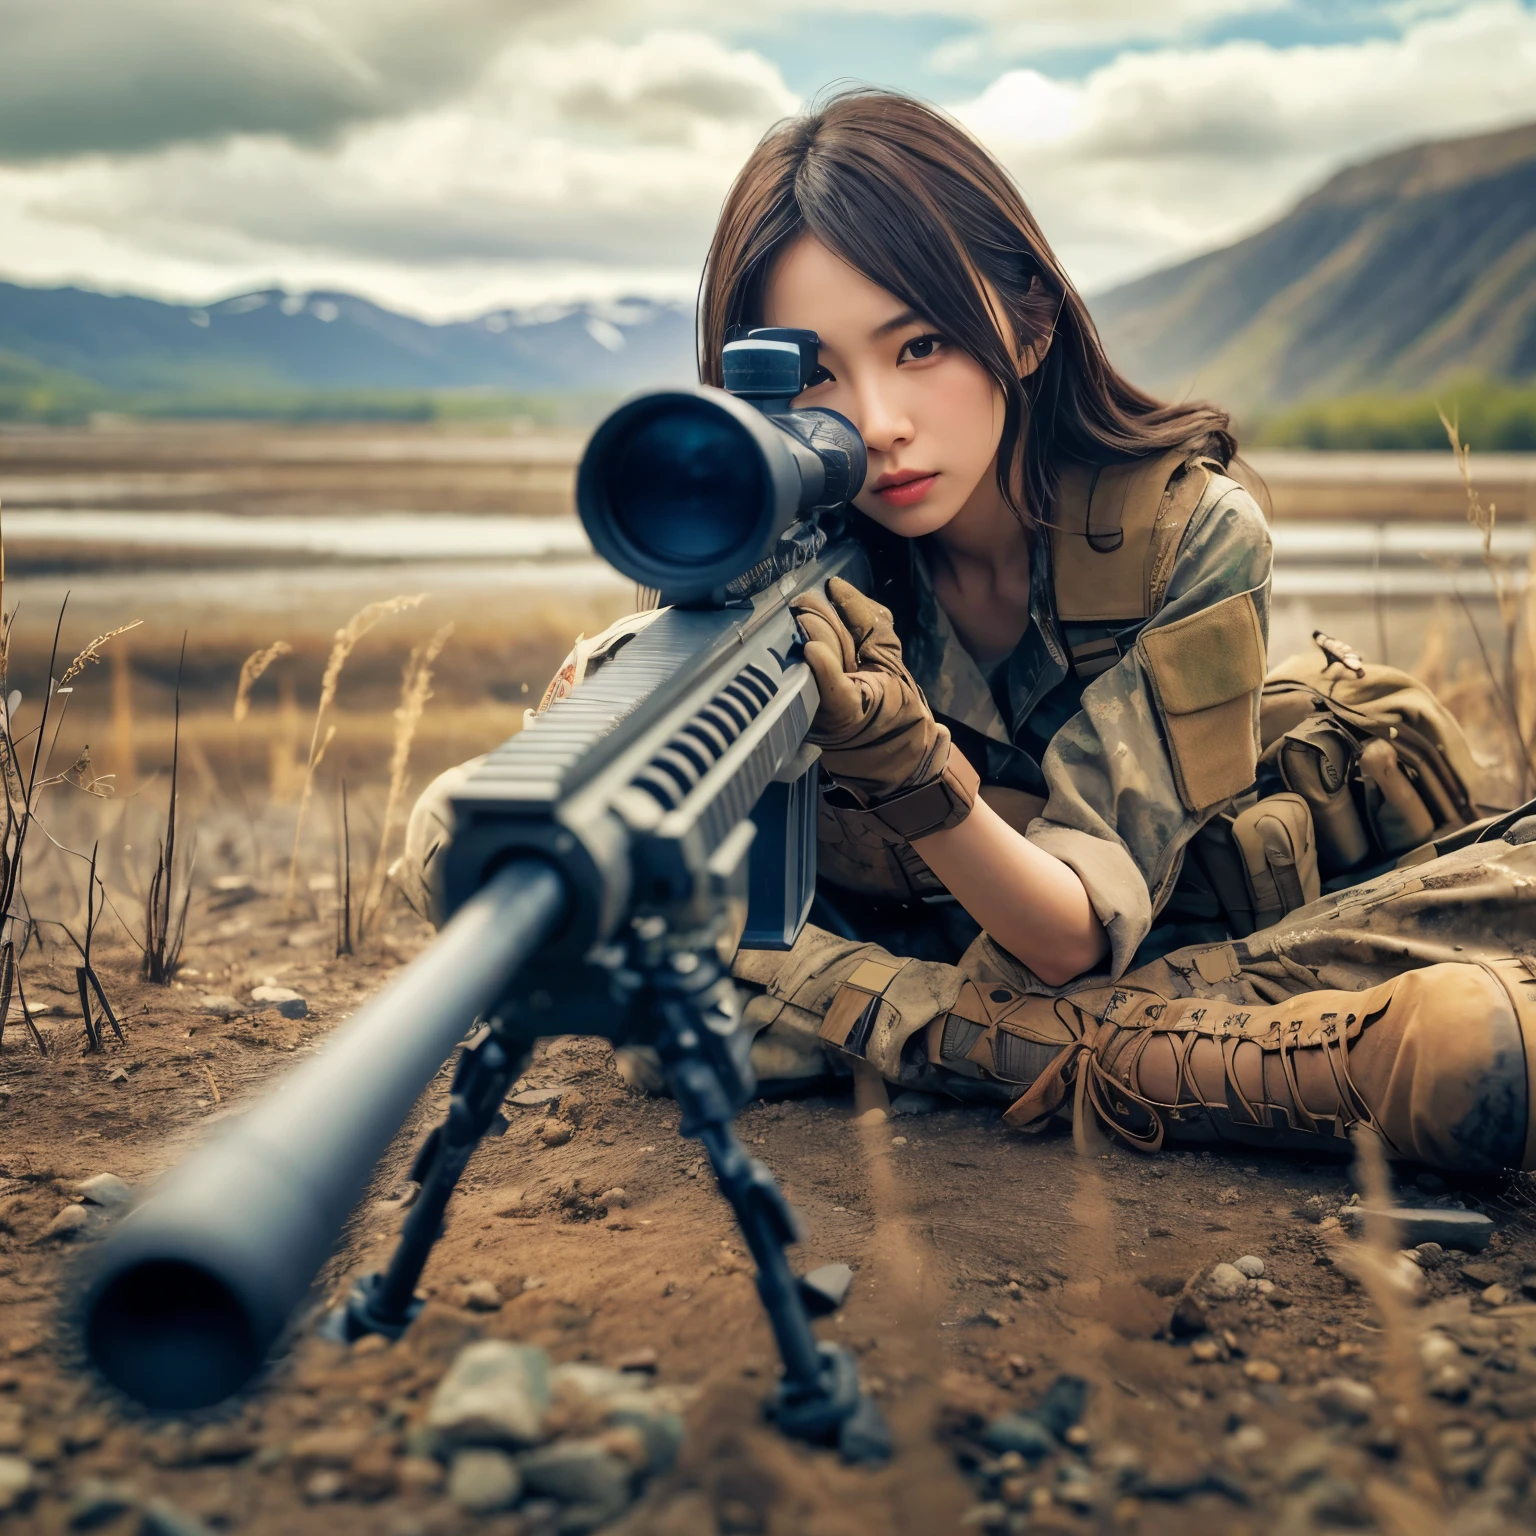 Fotorrealista、texturas de piel realistas、Una bella mujer japonesa perteneciente al ejército estadounidense apunta con un rifle de francotirador..、De pie、sobre los escombros、humo de polvo marrón、Poses de acción con movimiento.、Imagen desde arriba